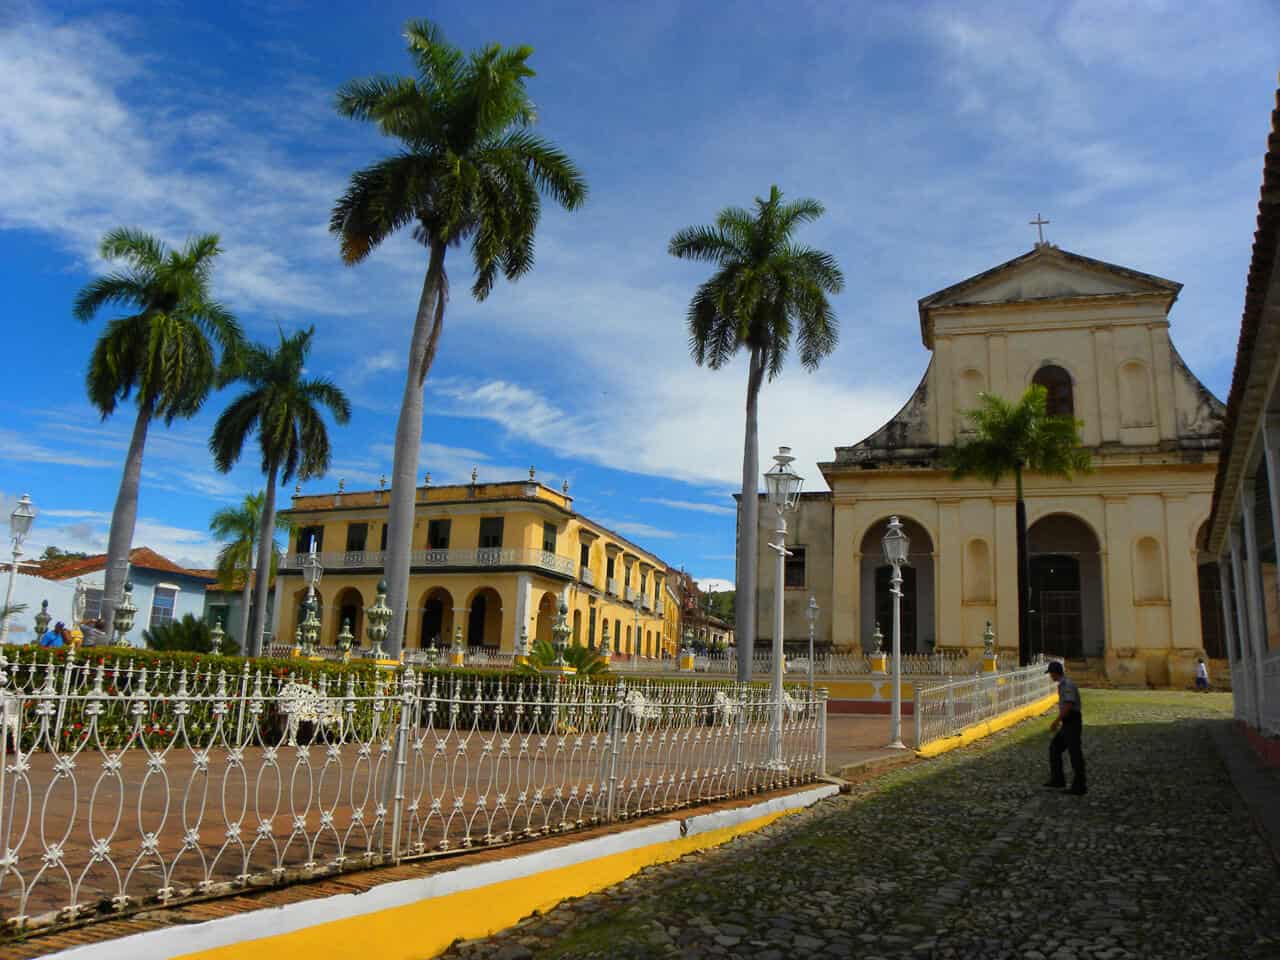 colonial buildings in trinidad, cuba